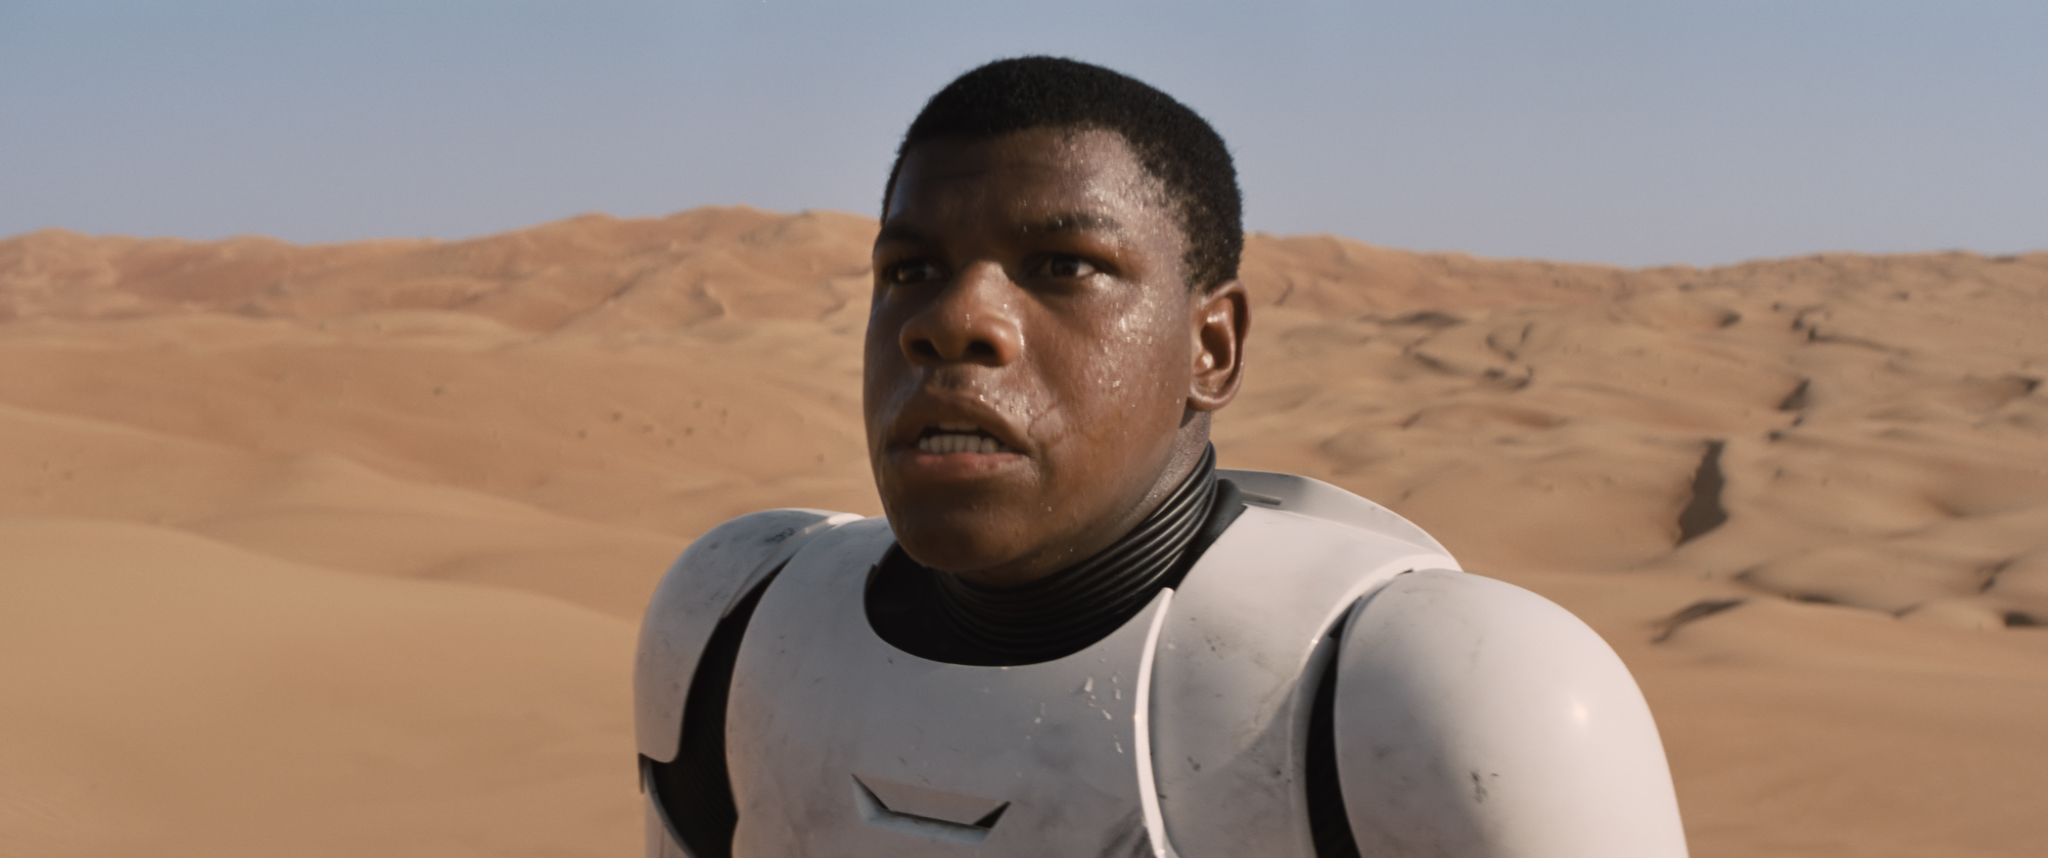 John Boyega in Star Wars: The Force Awakens.